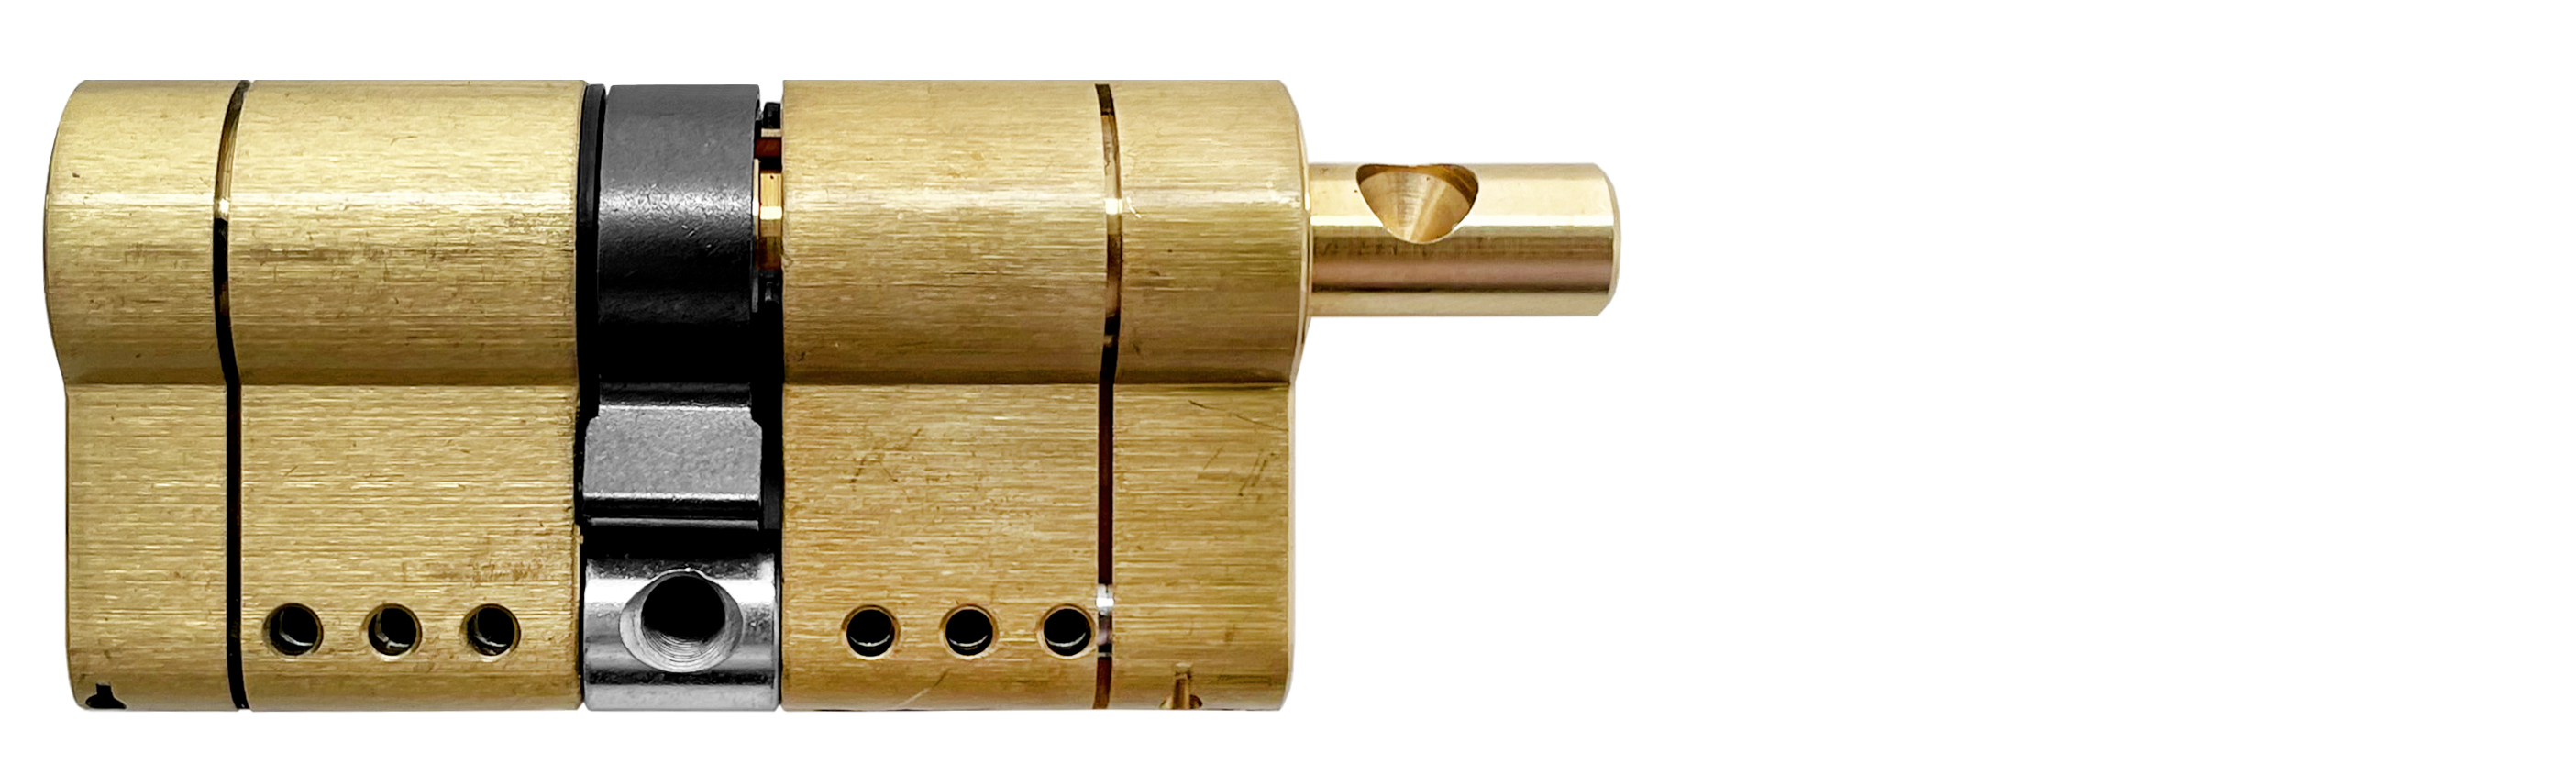 Цилиндр MOTTURA PRO 82(36+46)мм, ключ/вертушка, латунь формы для наращивания ногтей узкие 50 шт золотистый